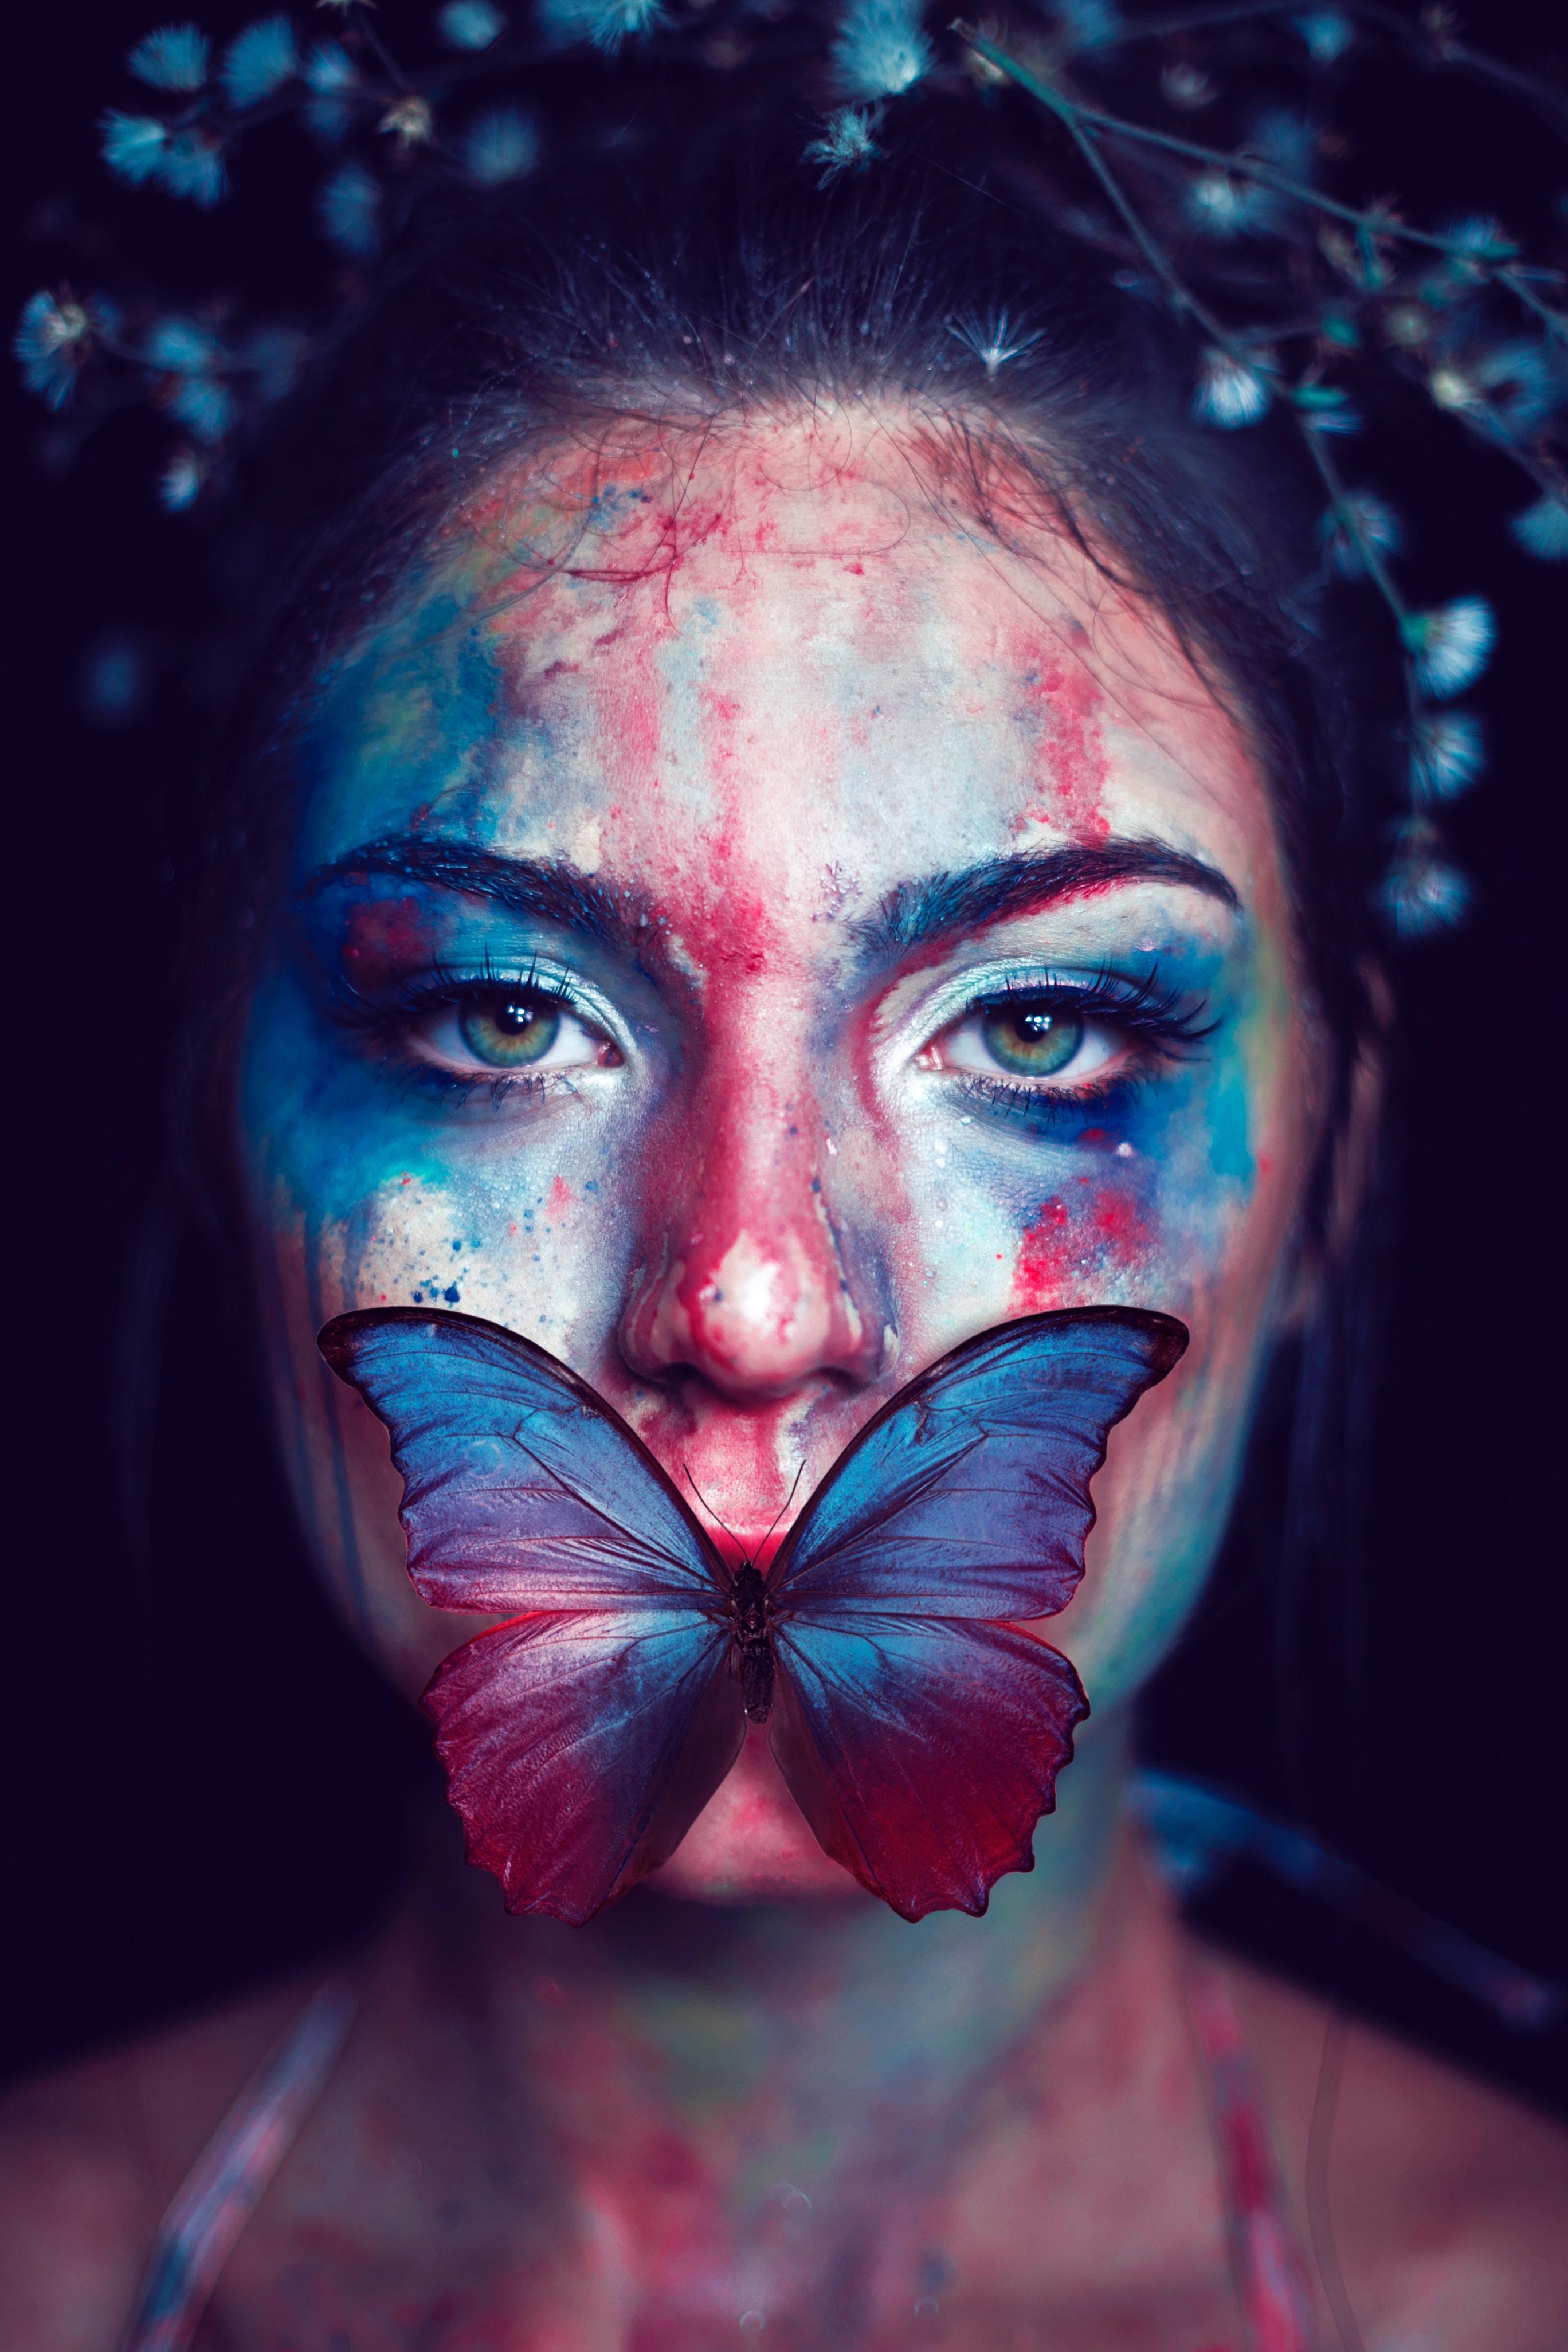 People 2736x4104 women portrait butterfly colorful face paint portrait display closeup